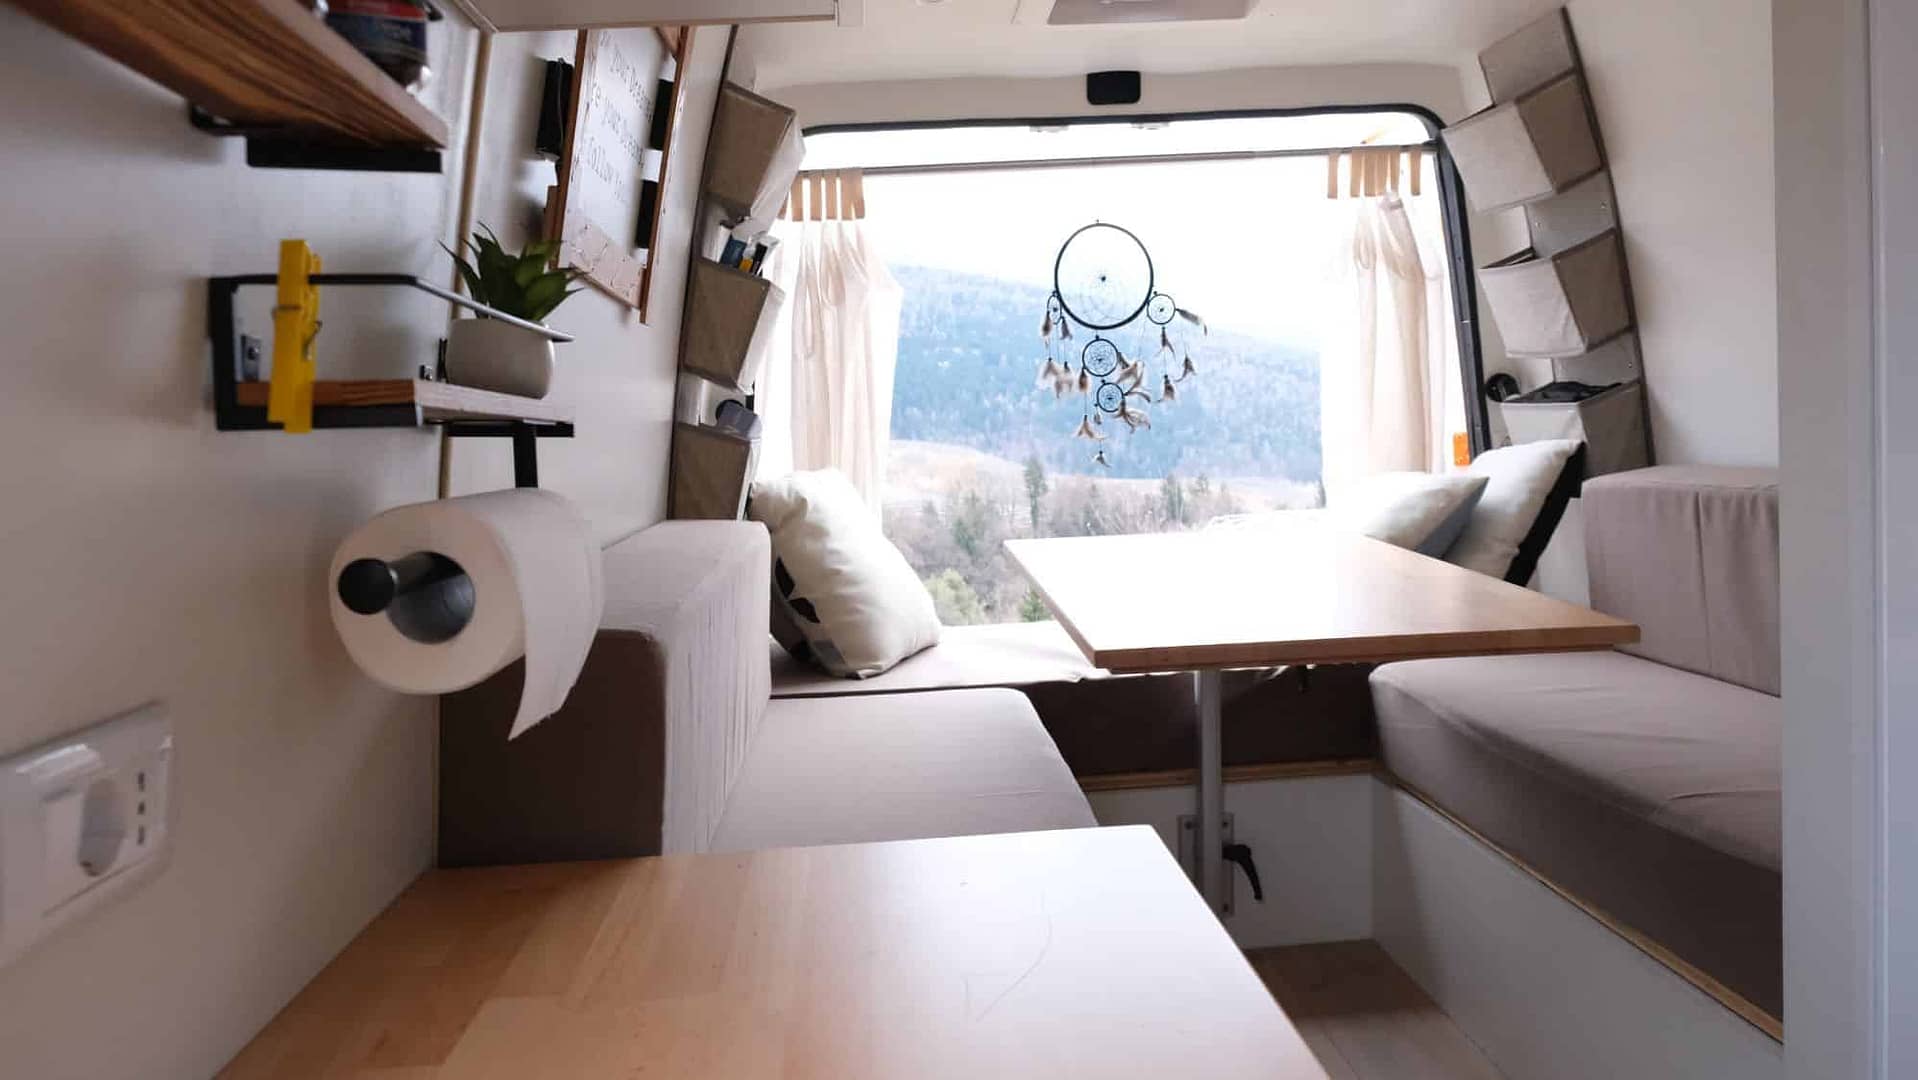 VERSIONE dinette - letto convertito furgone camperizzato